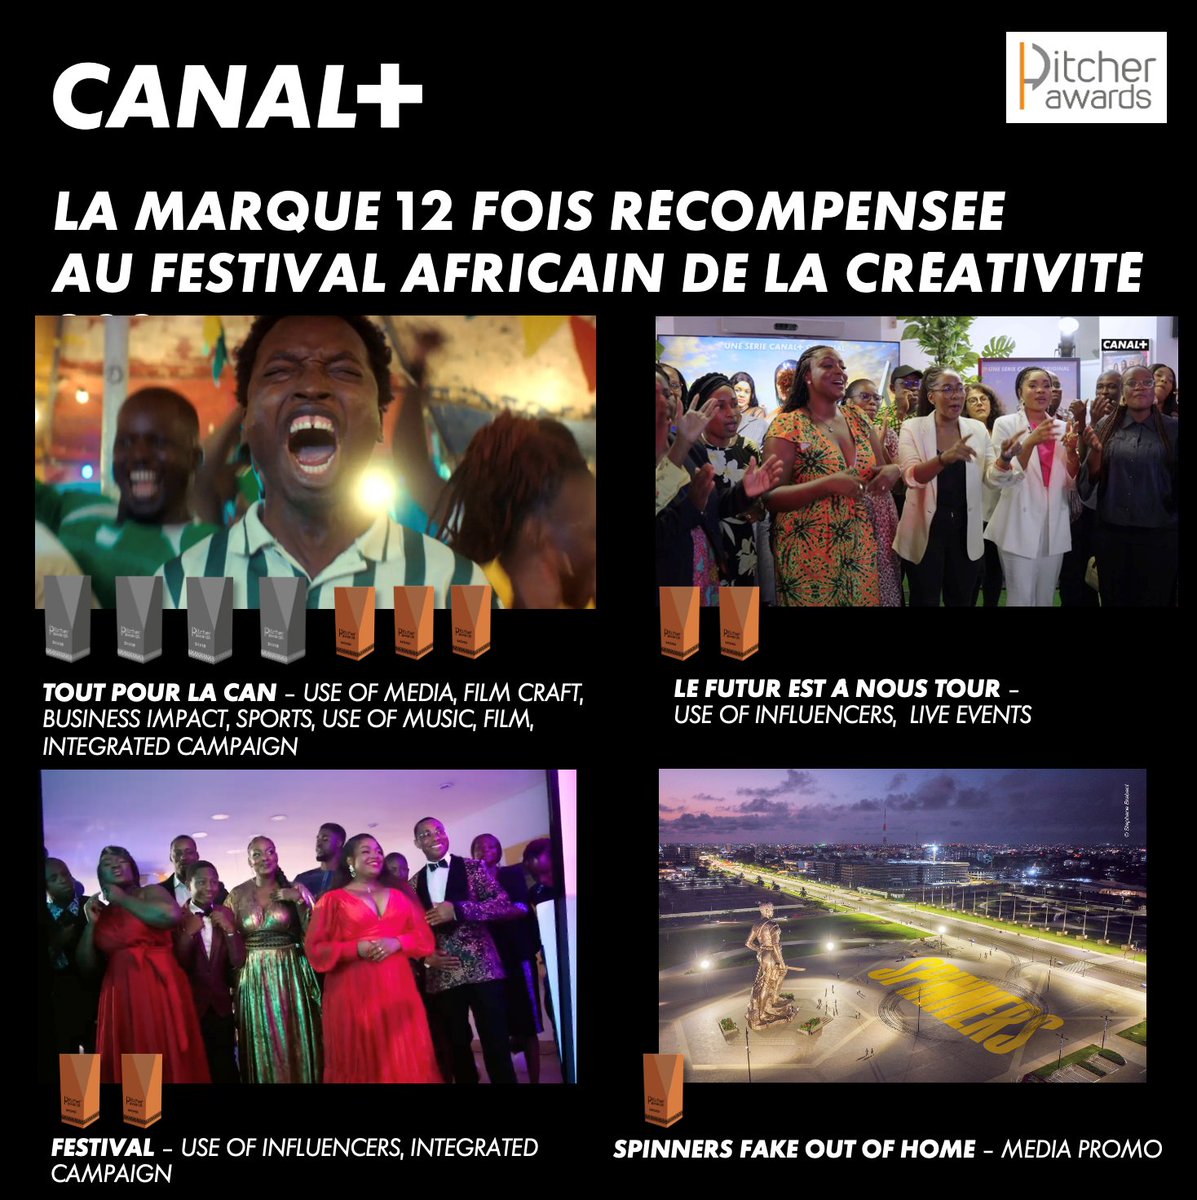 La marque CANAL+ poursuit son rayonnement à l'international et remporte 12 prix au @PitcherFestival qui récompense la créativité africaine 🔥

4 campagnes majeures de CANAL+ en Afrique sont reconnues pour leur originalité, leur pertinence et leur qualité d'exécution